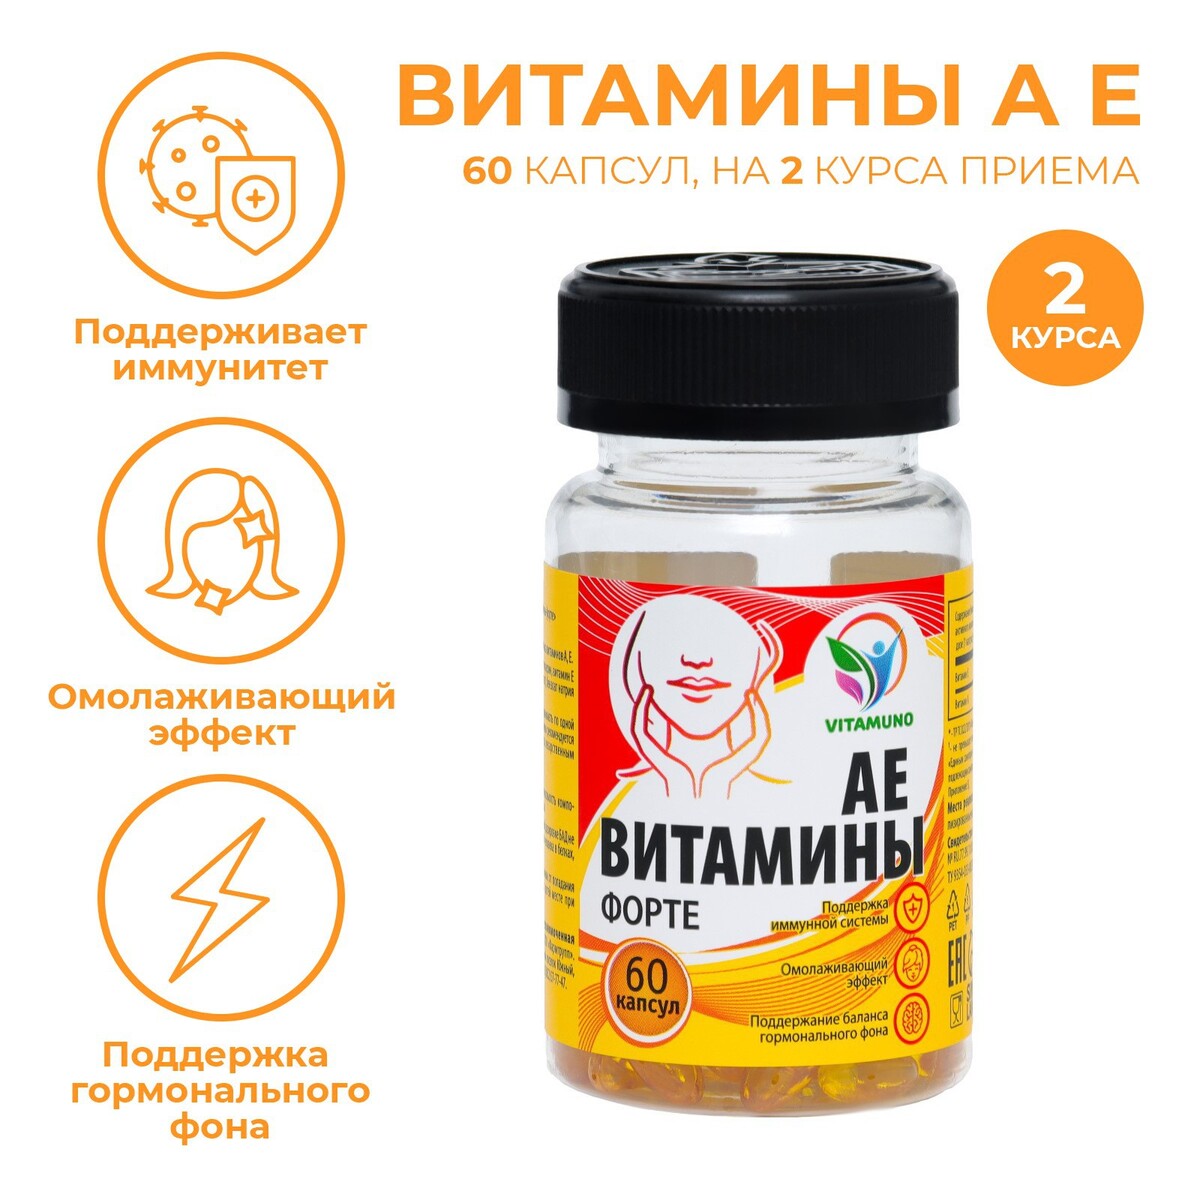 Ае витамины-форте, 60 капсул по 350 мг nutricar liposomal curcumin липосомальный куркумин витамин кидс веган 60 капсул